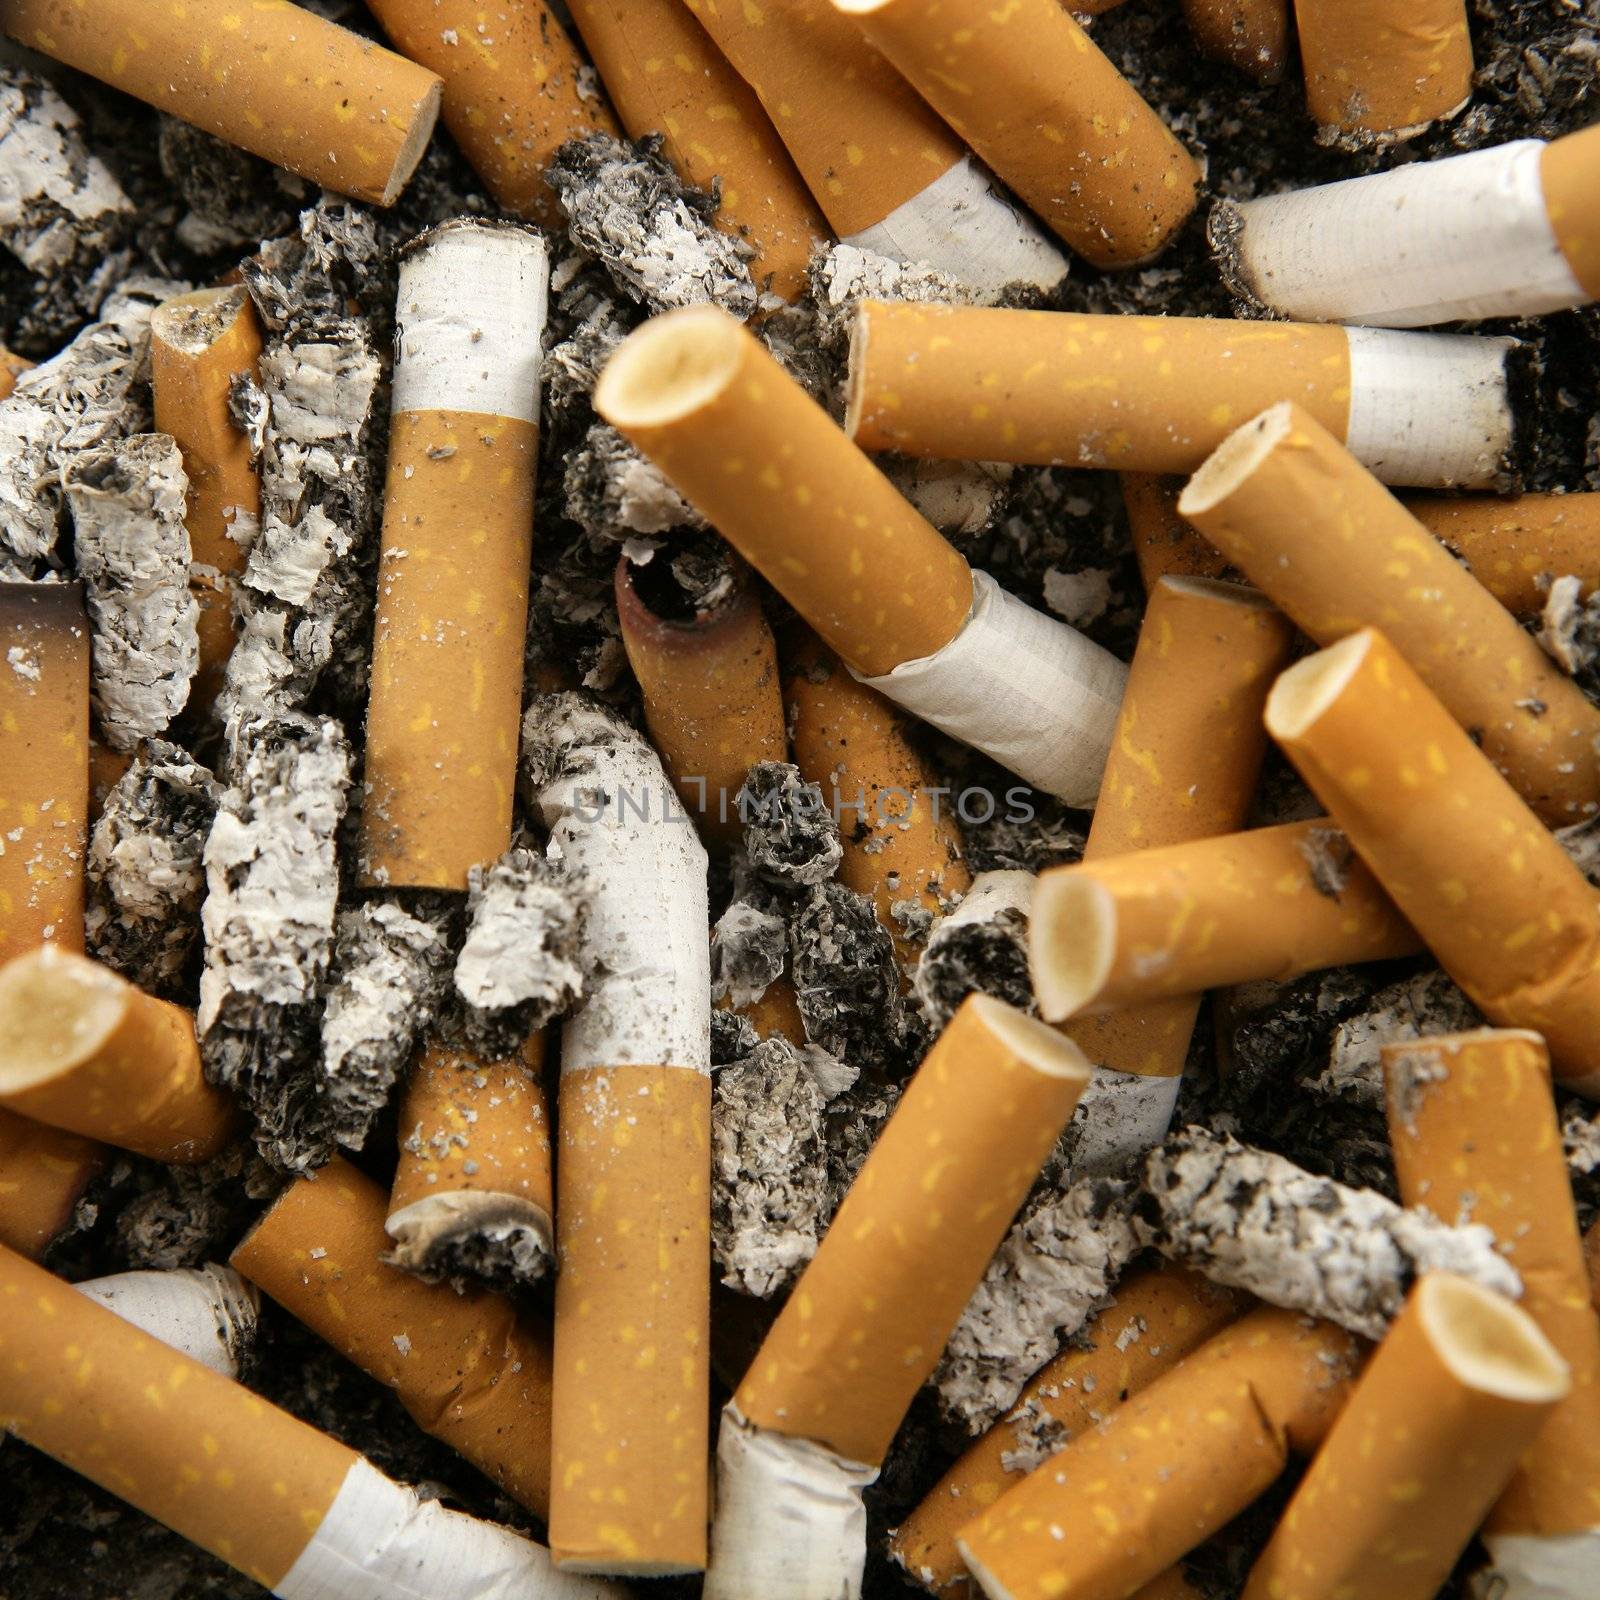 cigarettes texture, busy ashtray square still shot